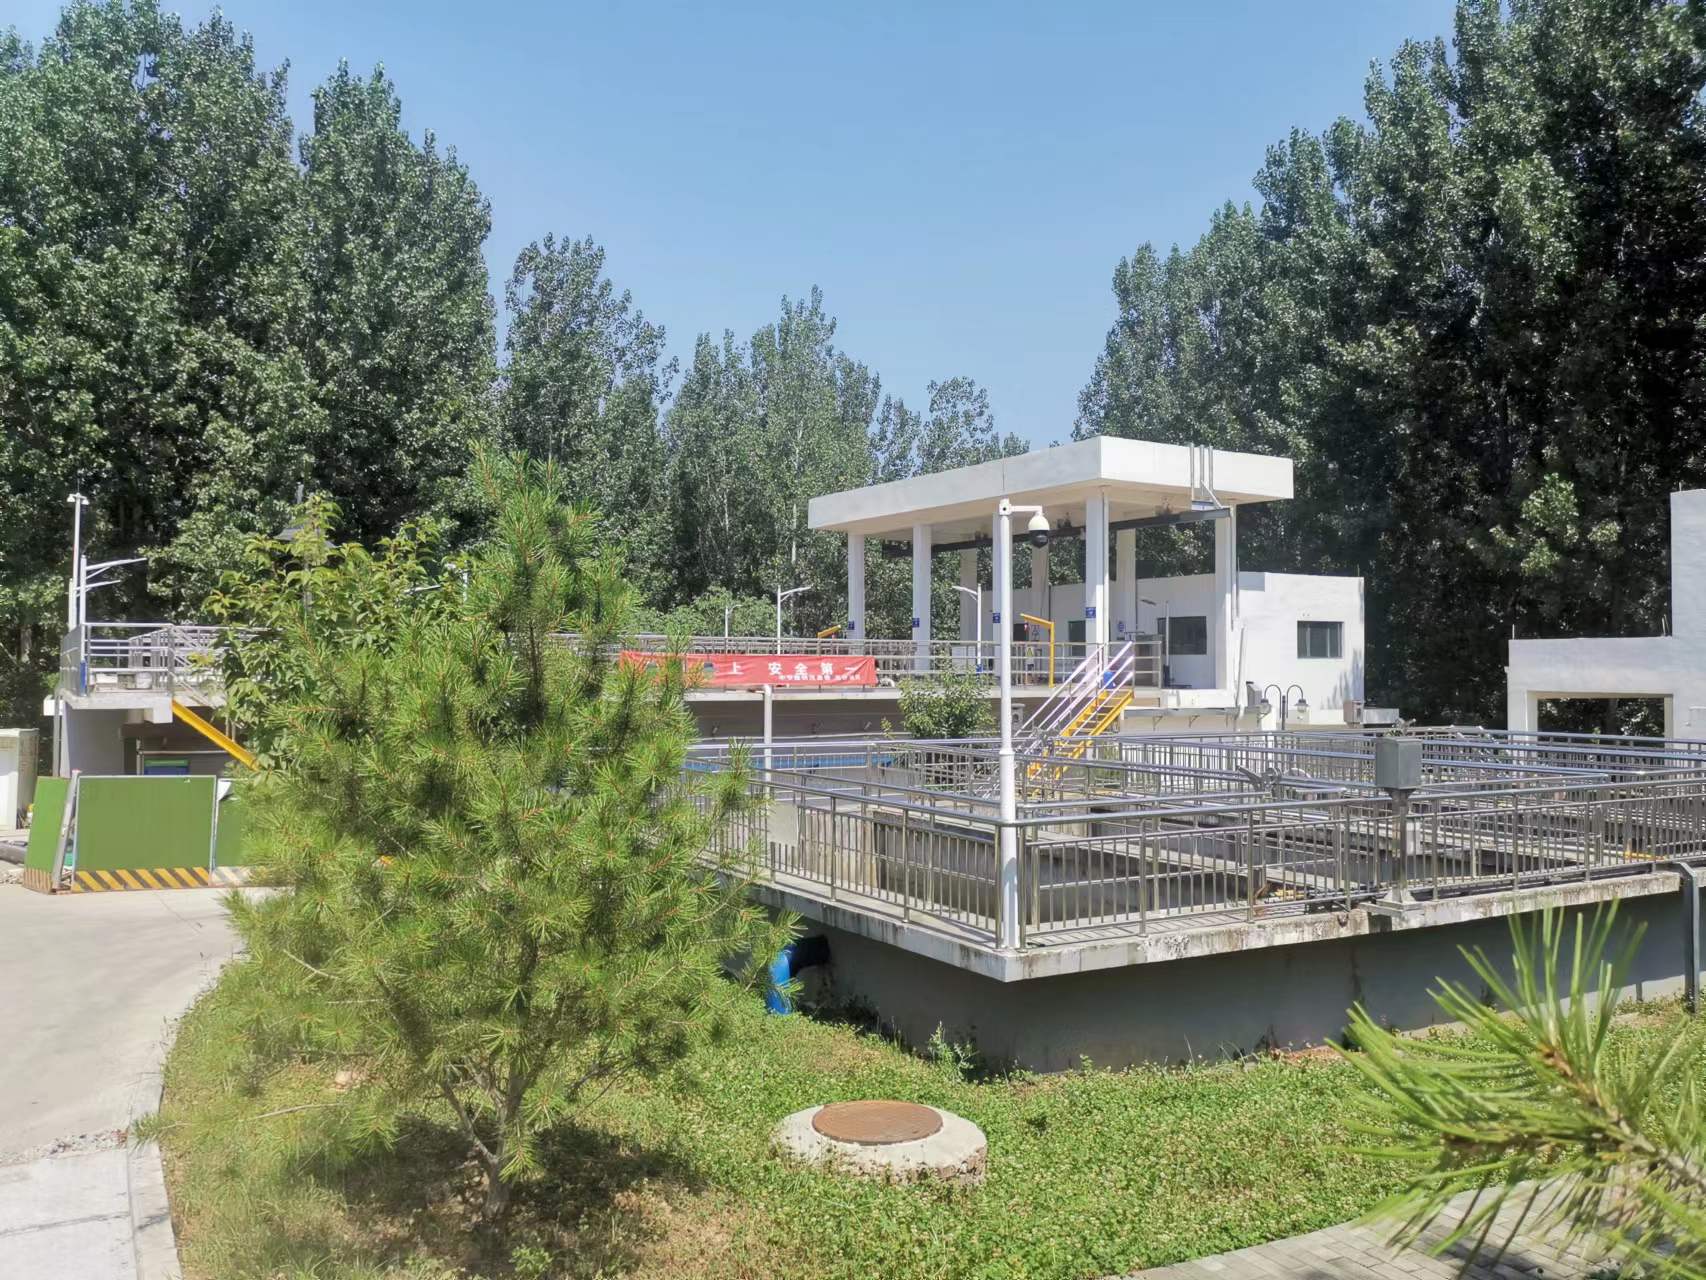  西安市长安区五台污水处理厂技改项目